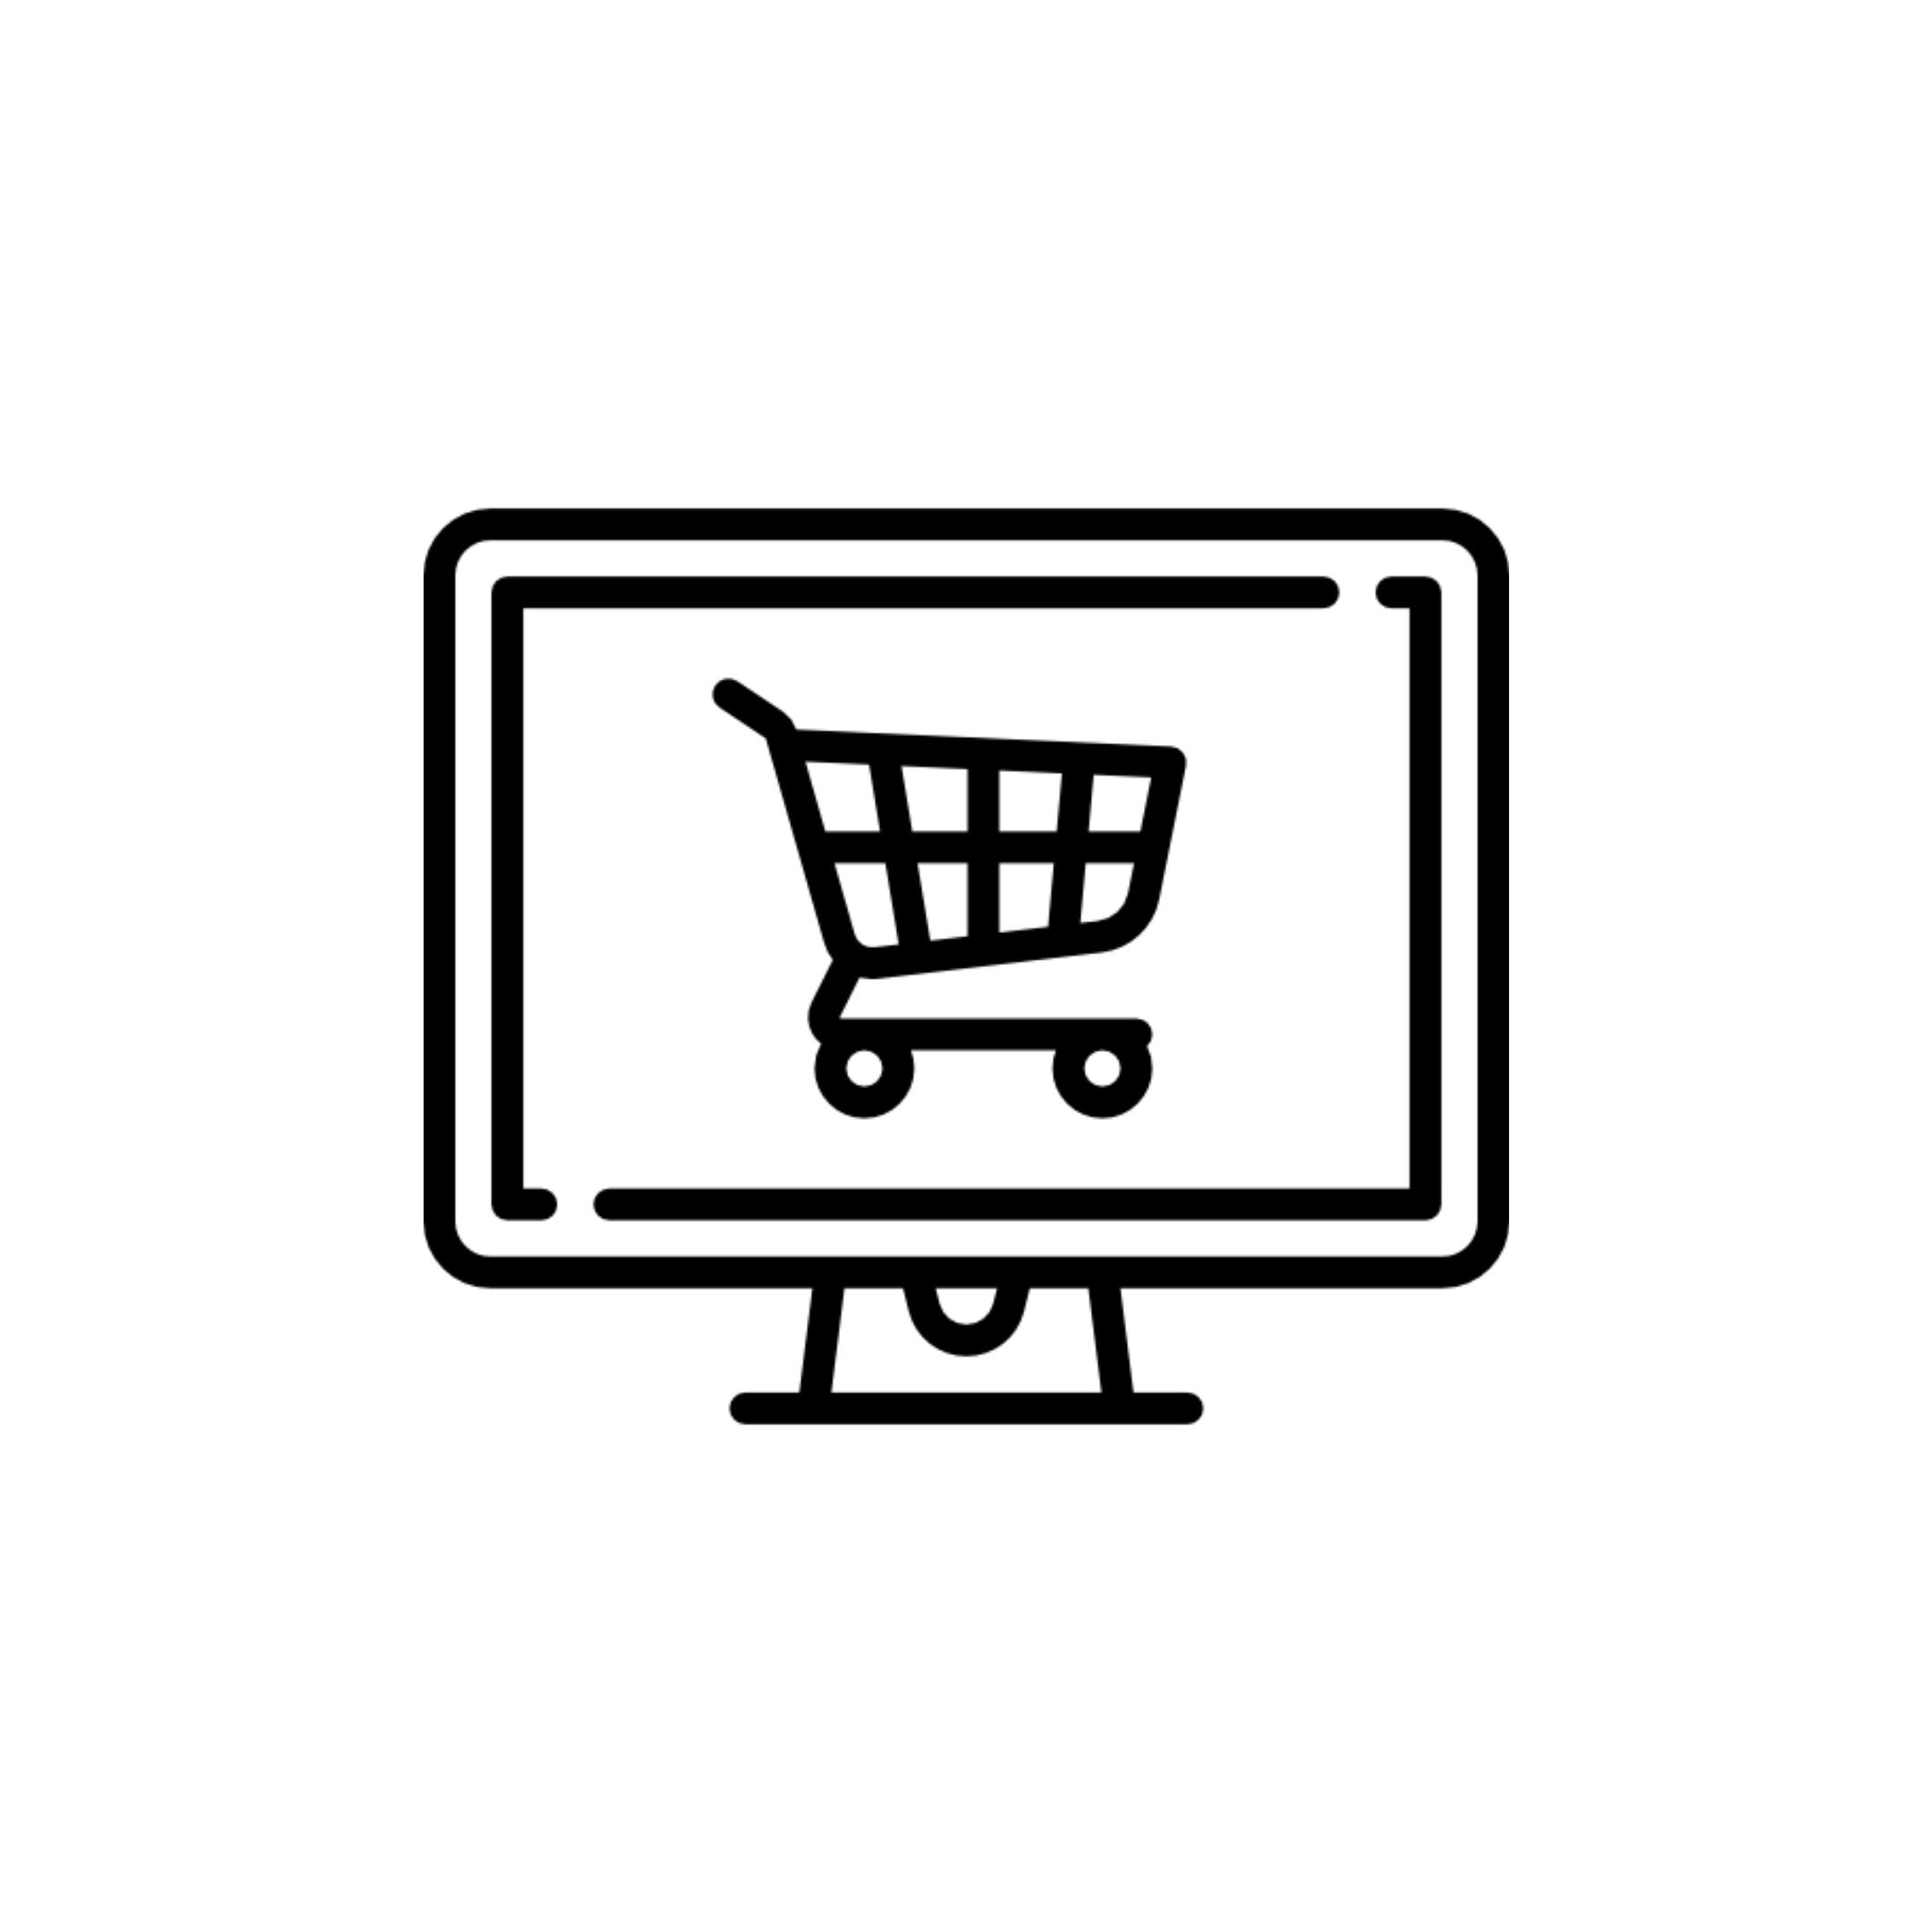 online-shopping.jpg